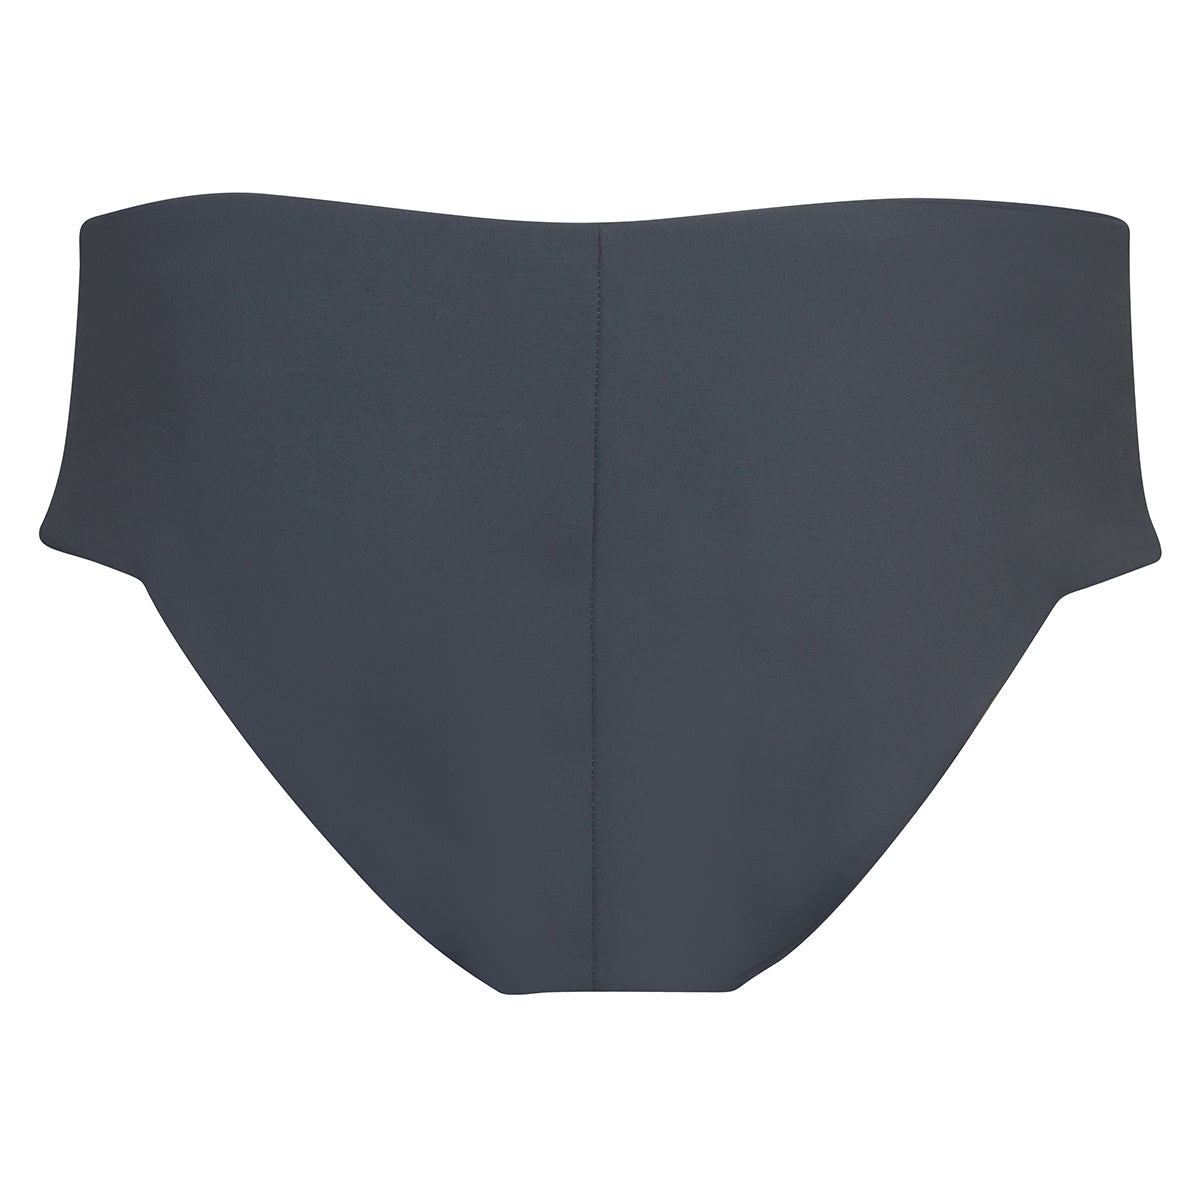 Carlo Square: The Modern Square Boy Brief Bikini Bottom